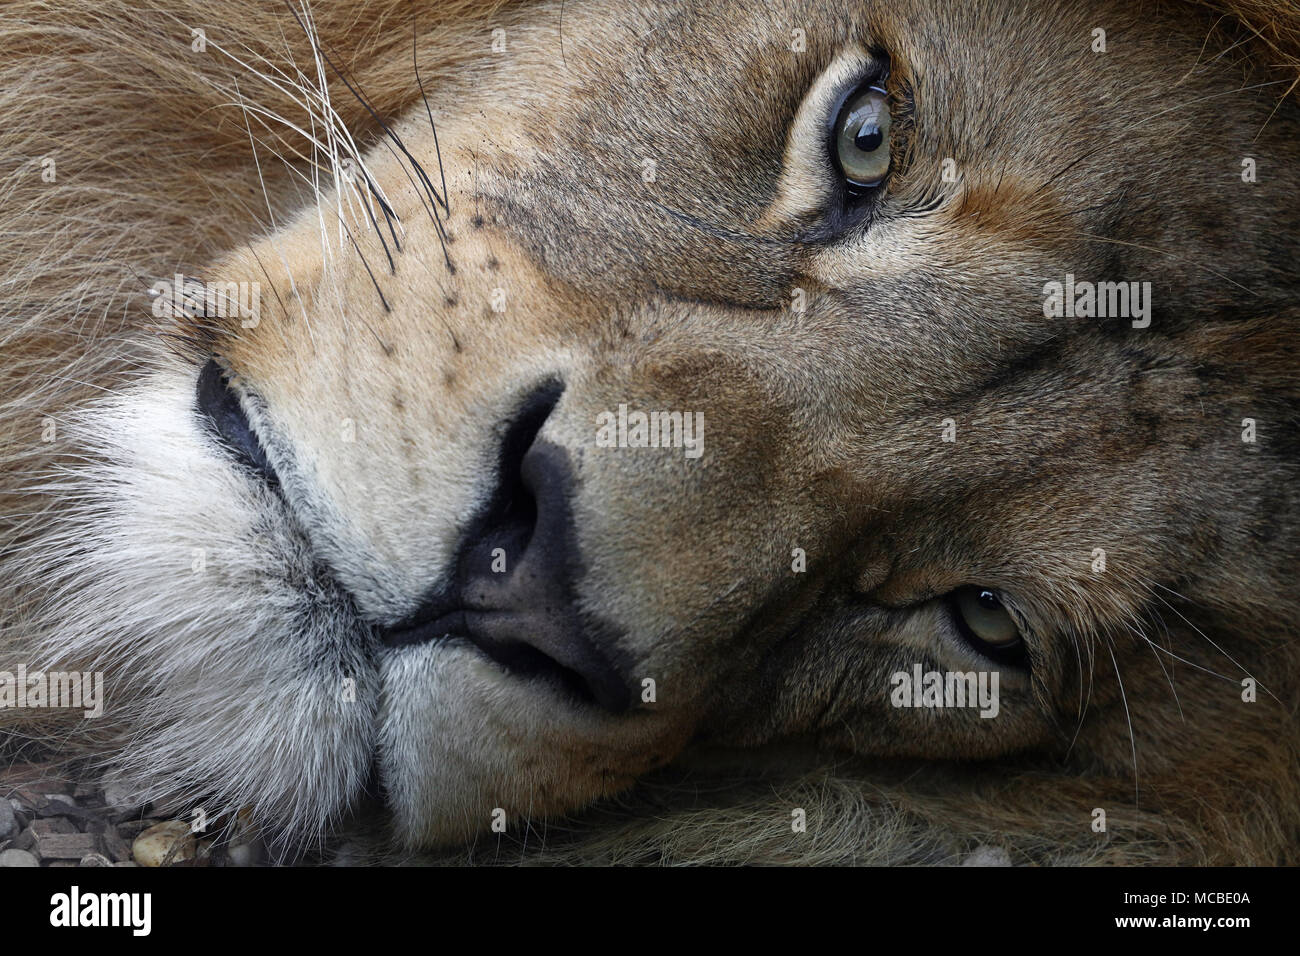 Máximo acercamiento retrato de león africano macho lindo con hermosas crines, sentando apoyada en el suelo y mirando a la cámara, el ángulo de visión baja Foto de stock